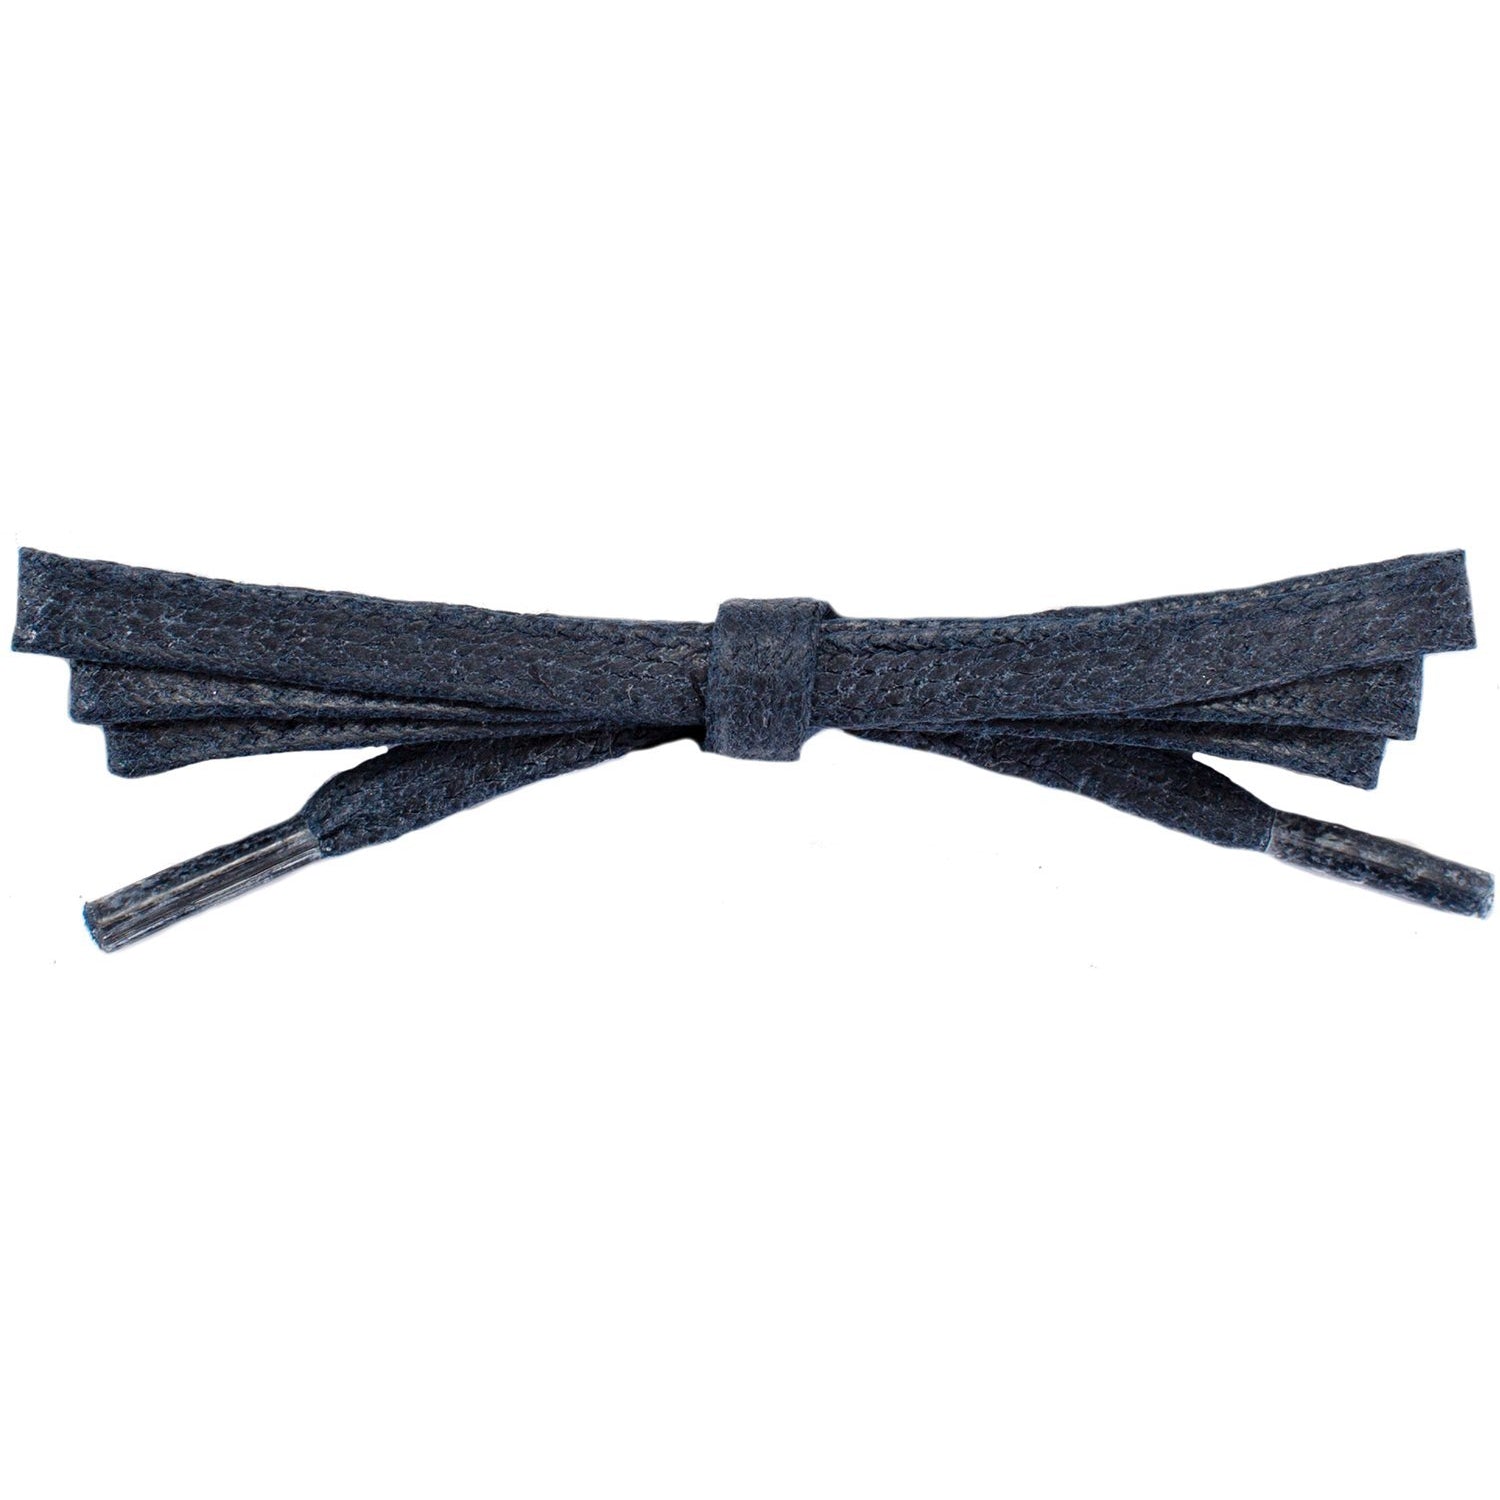 Wholesale Waxed Cotton Flat DRESS Laces 1/4'' - Navy Blue (12 Pair Pack) Shoelaces